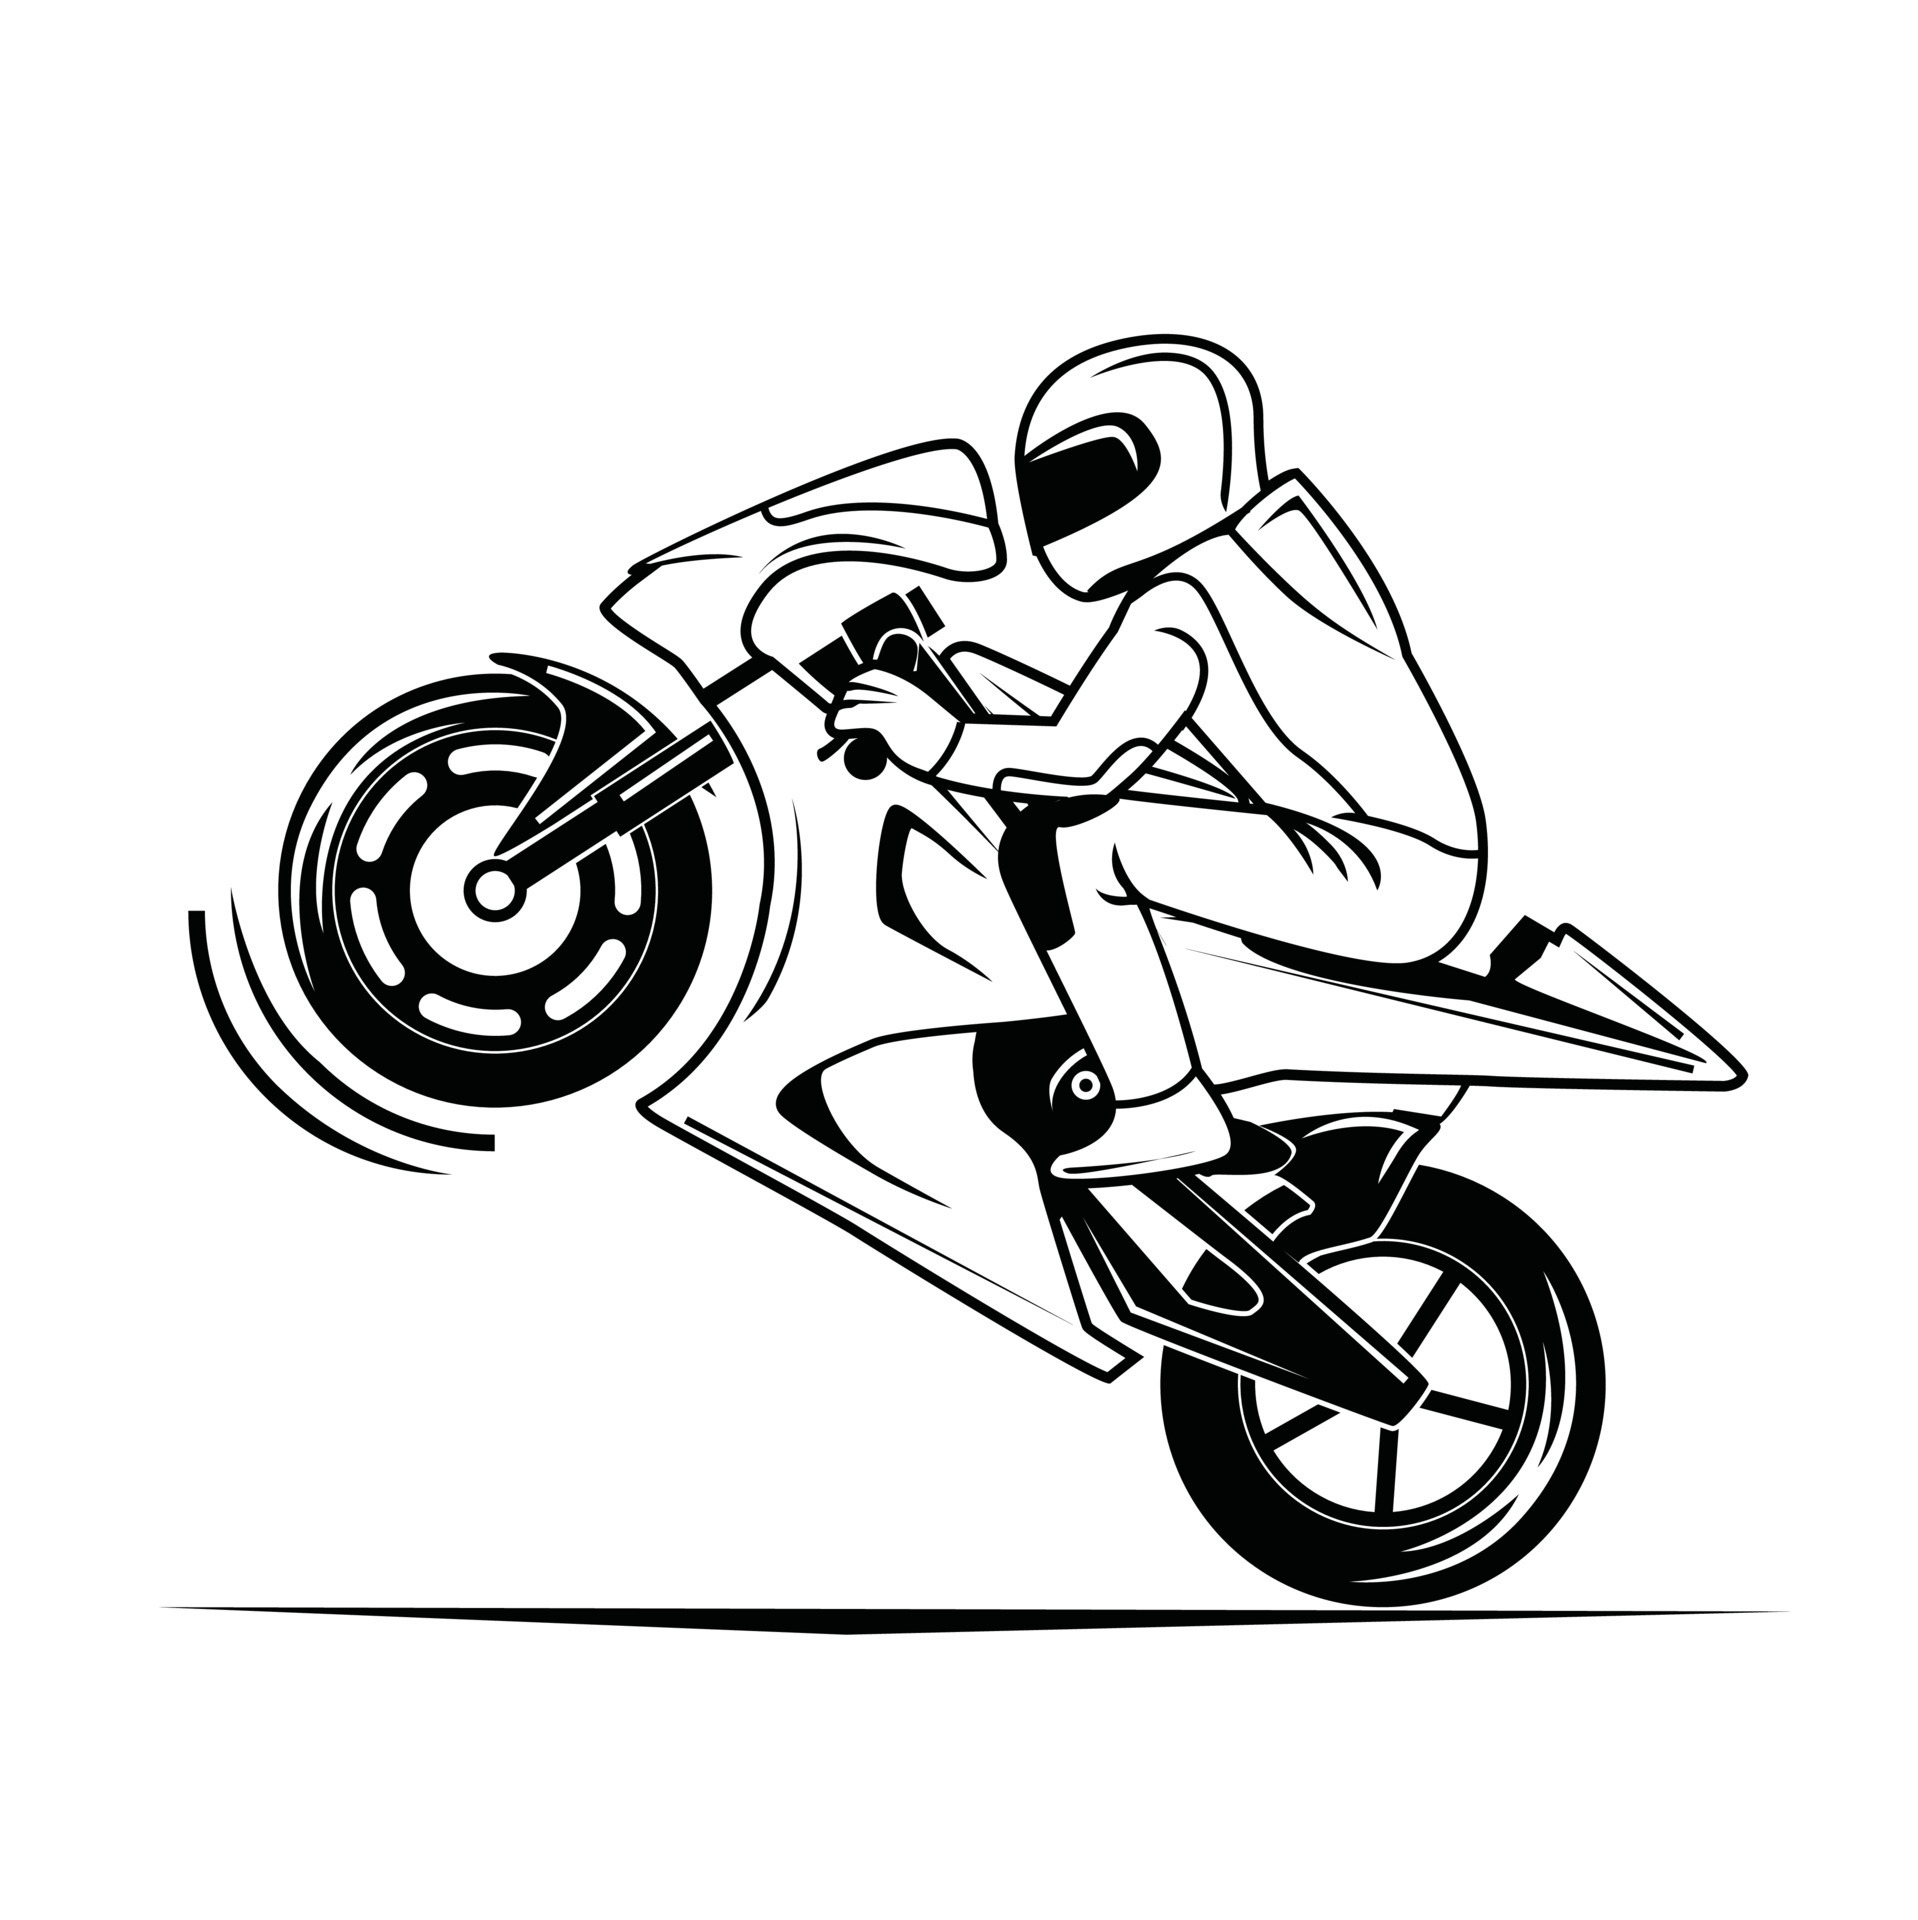 Capacete de moto, desenho realista corrida de moto preto, jogo